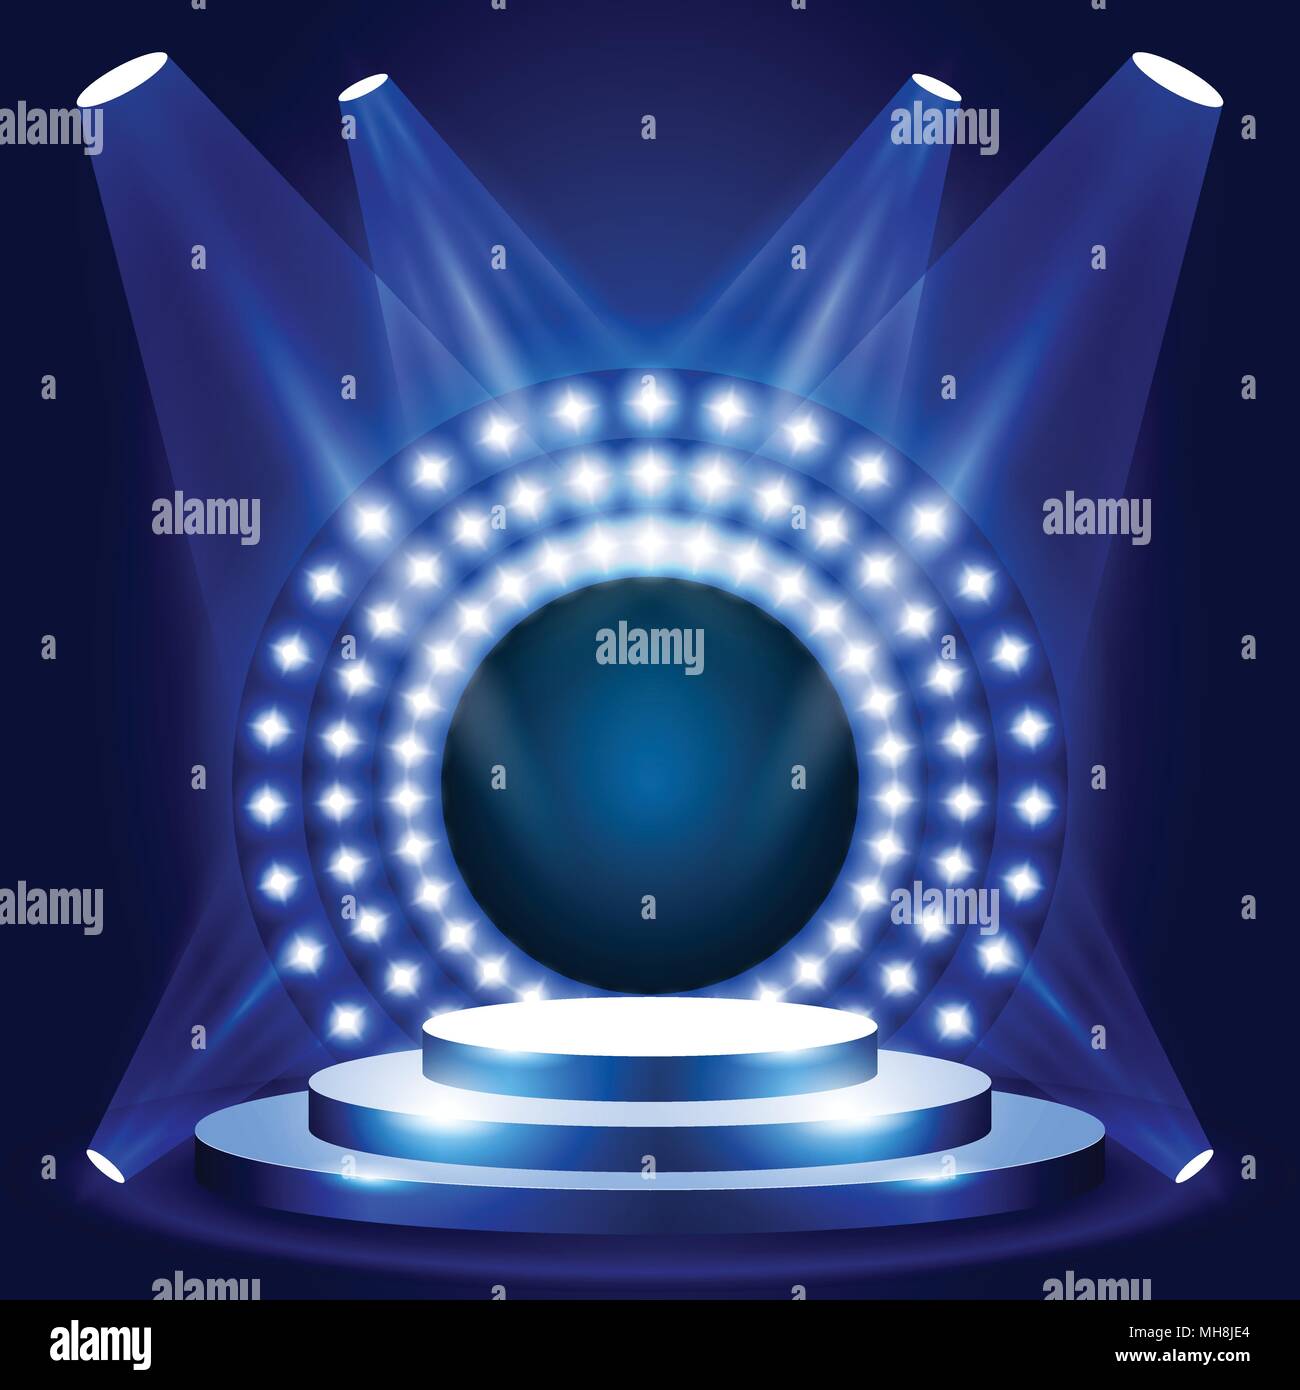 TV show scène avec Cercle de lumières - scène ou podium pour la cérémonie de remise des prix, voir podium Illustration de Vecteur